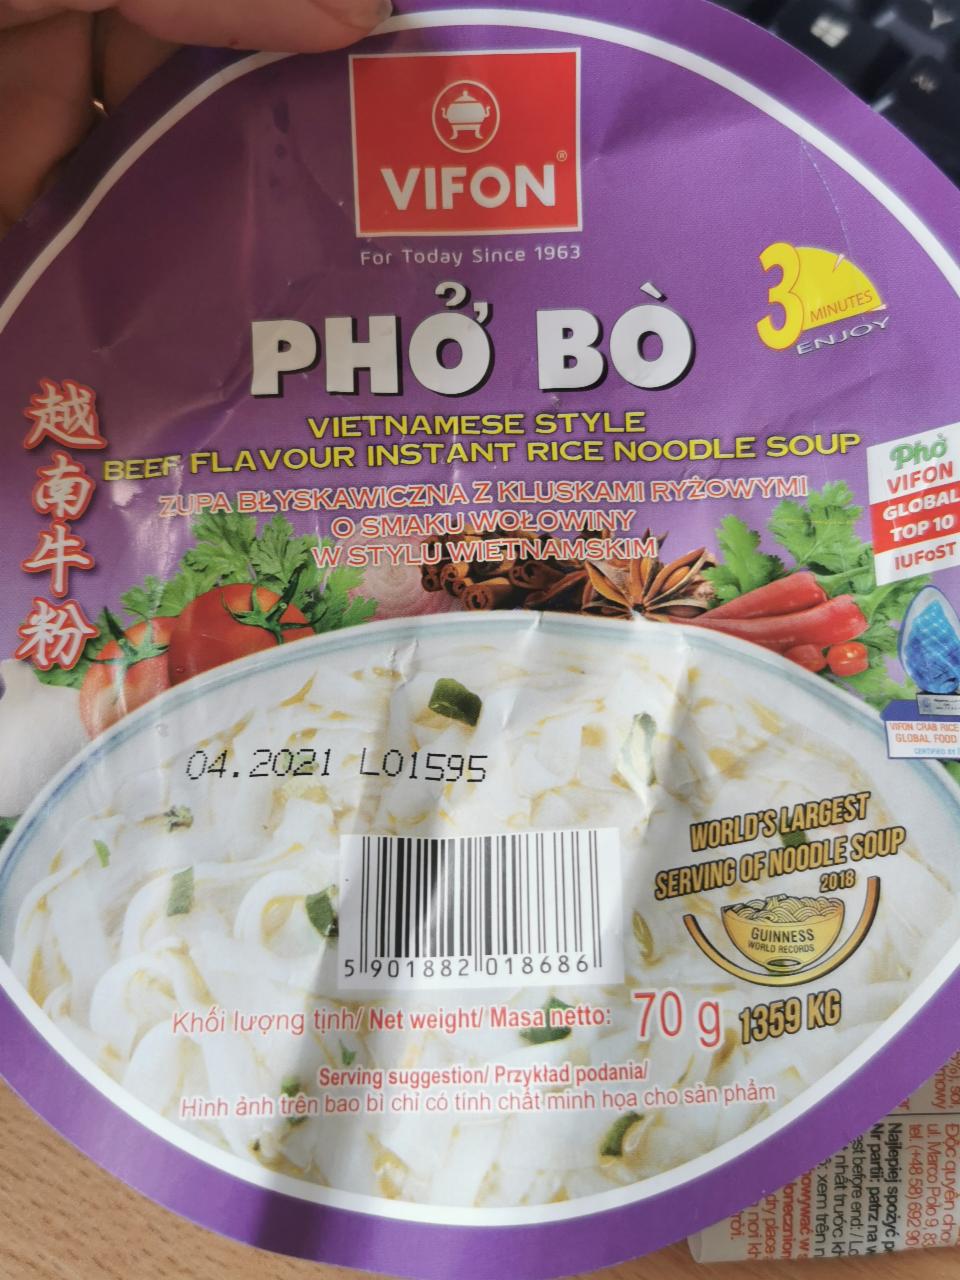 Photo - Vifon Pho Bo Vietnamese Style Beef Flavour Instant Rice Noodle Soup 70 g